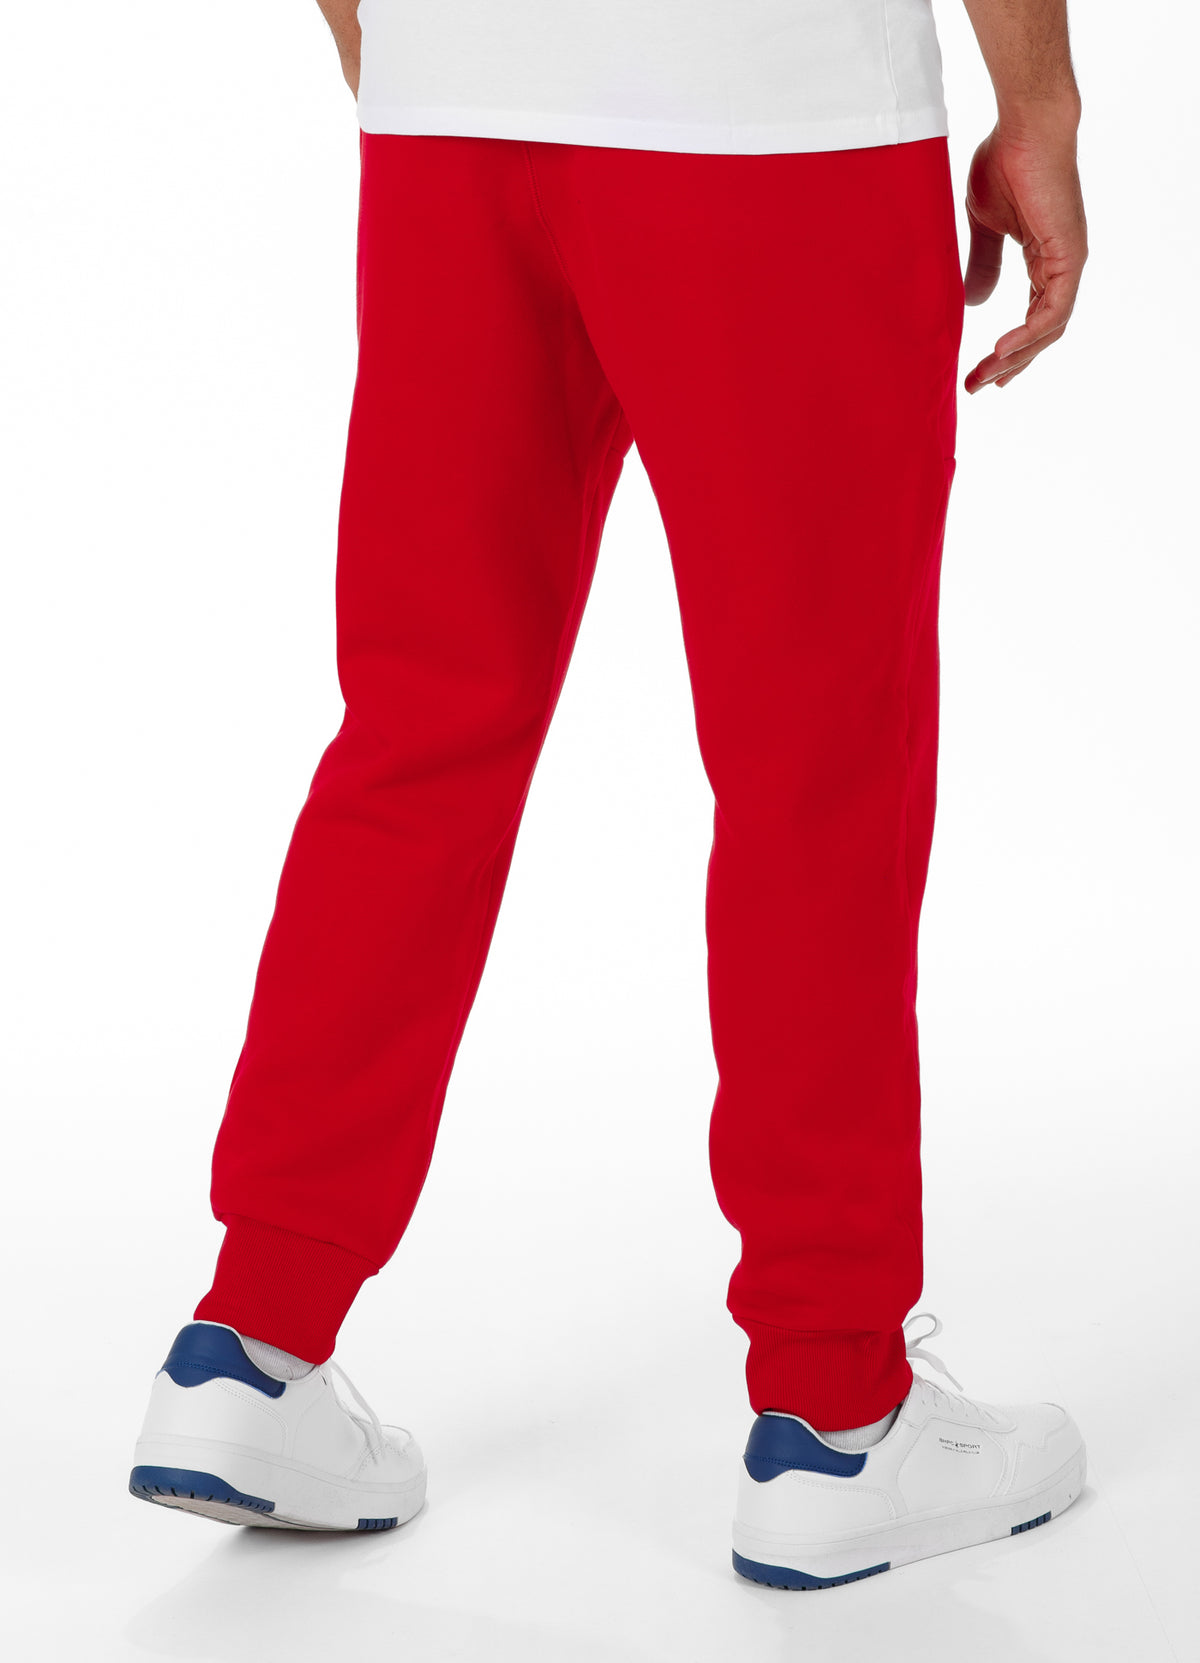 NEW HILLTOP Red Jogging Pants - Pitbullstore.eu